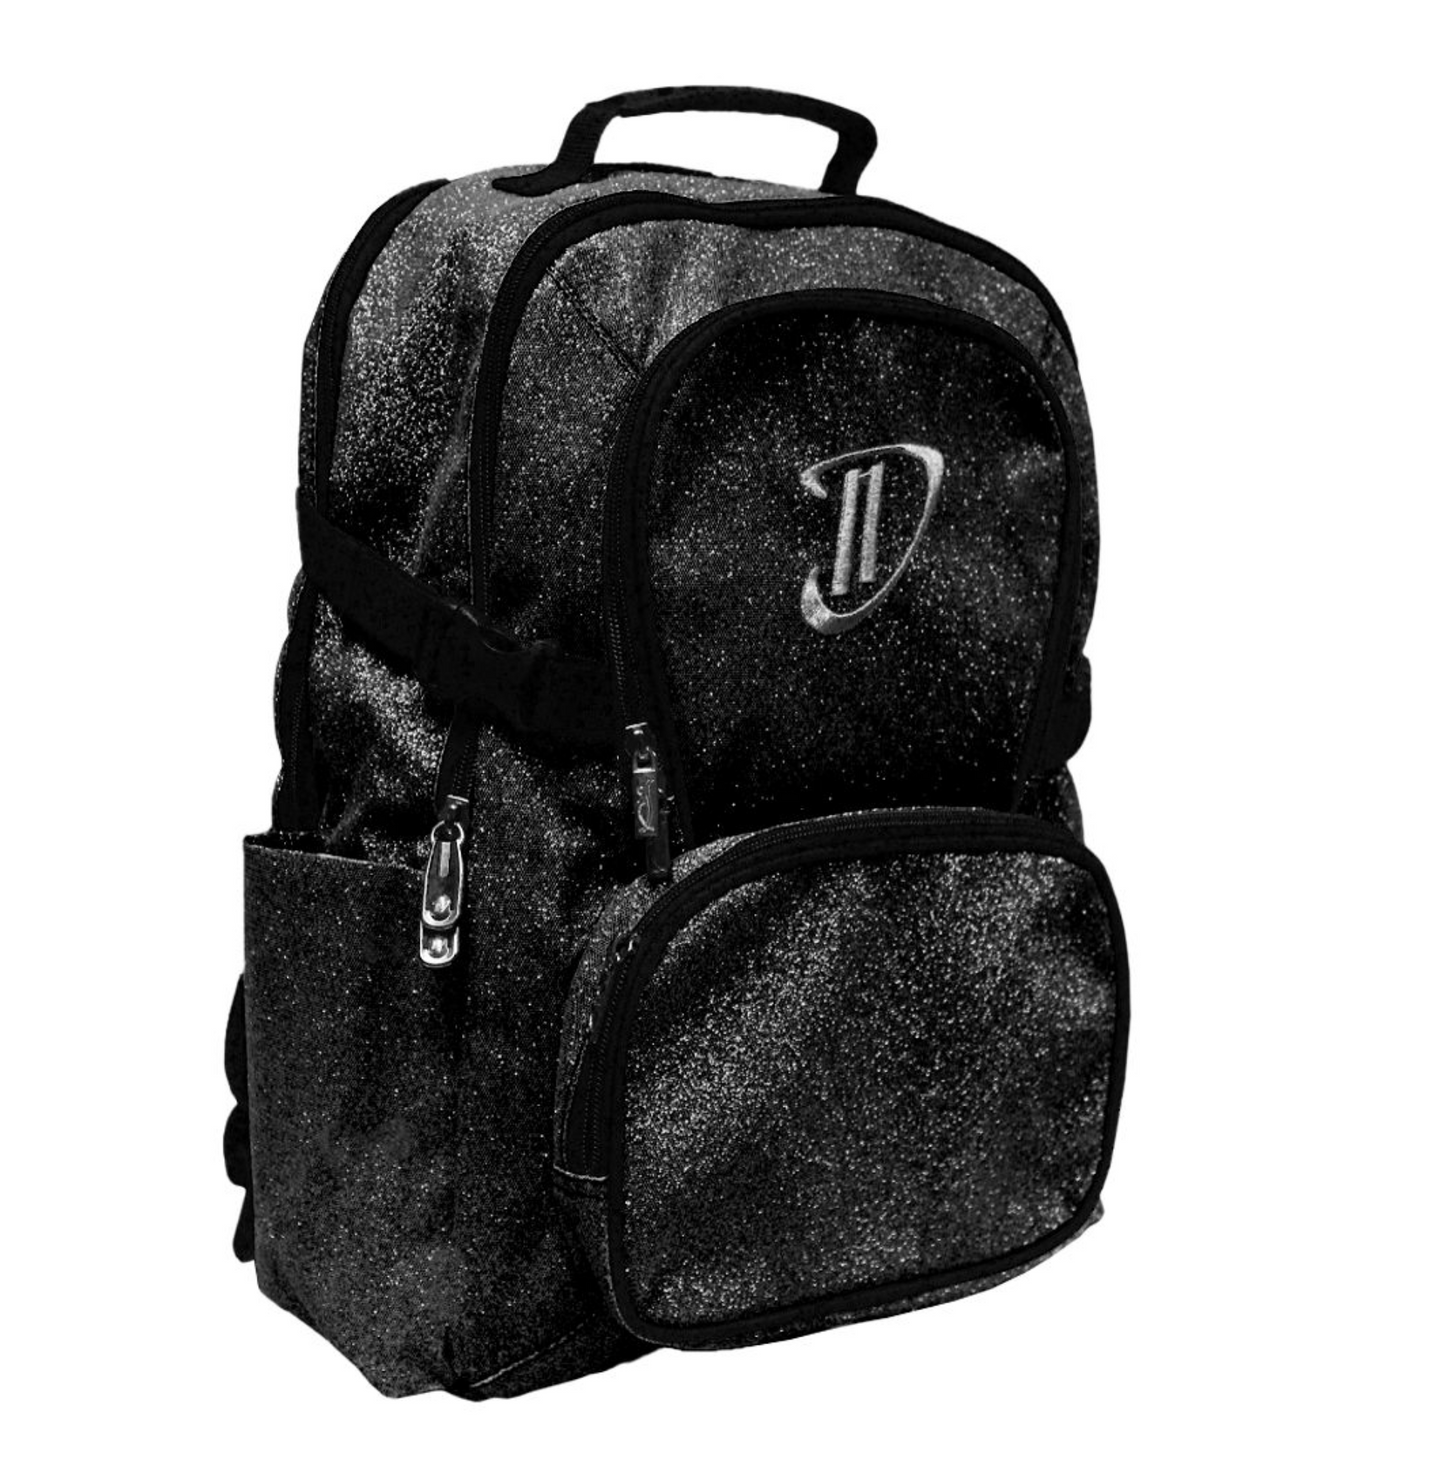 Black Sparkle Backpack